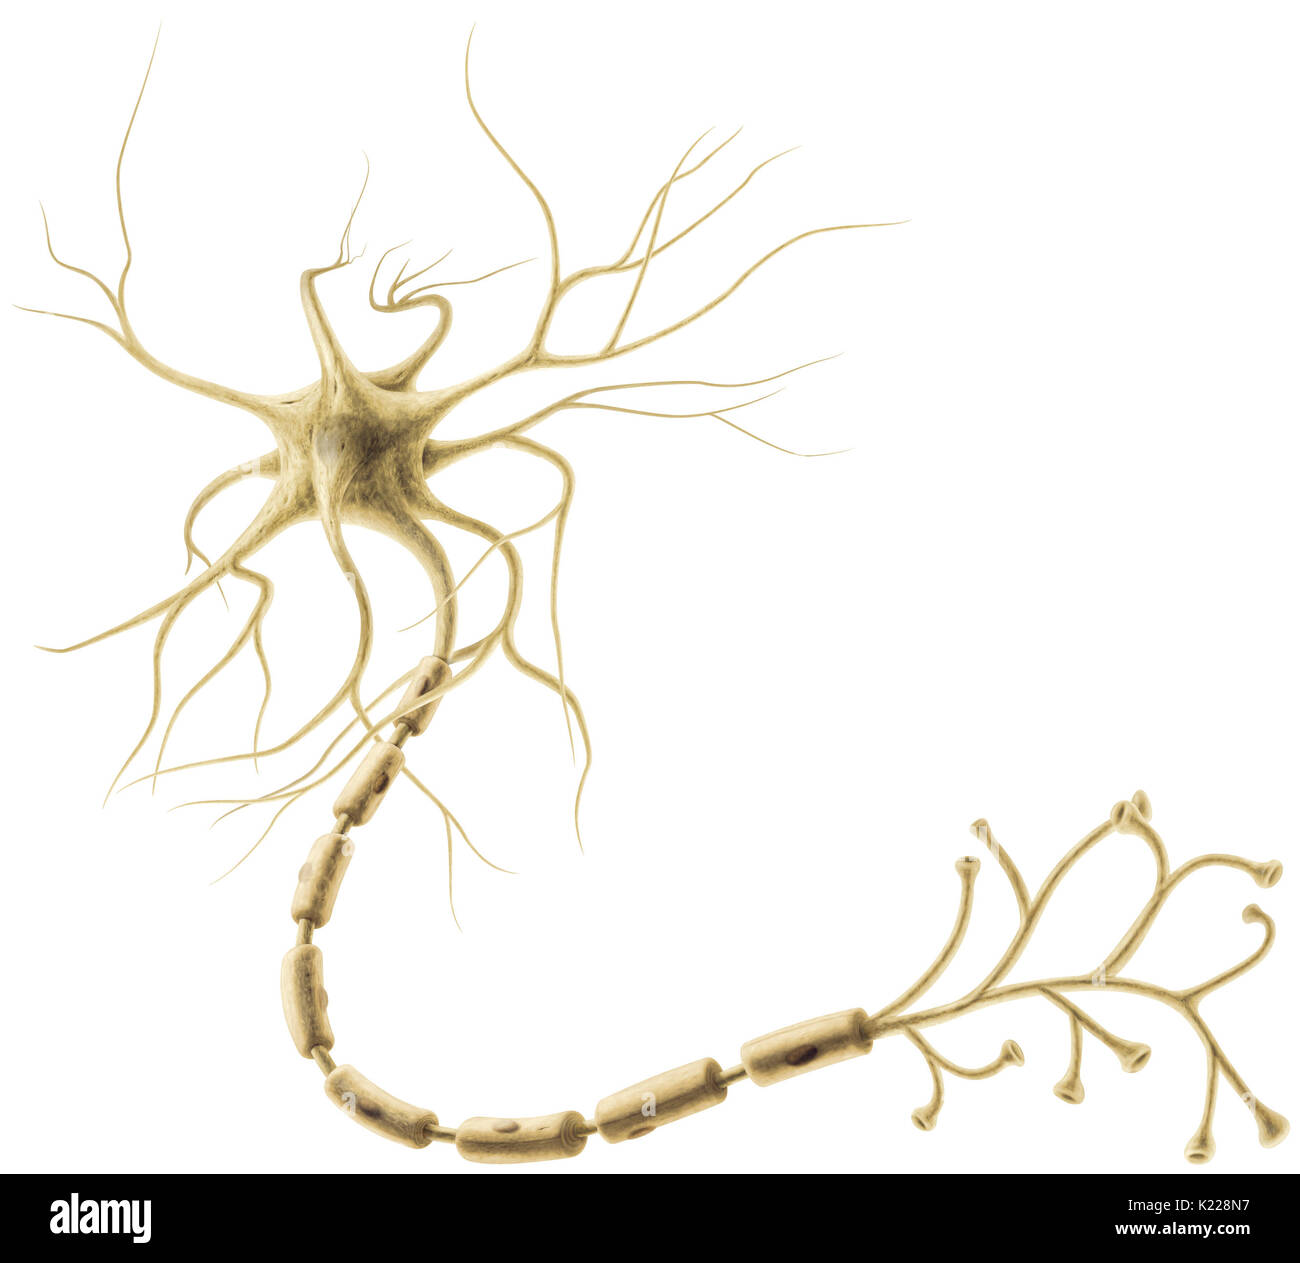 Células del sistema nervioso que permita que la información sea transportado en forma de señales eléctricas y químicas. Foto de stock